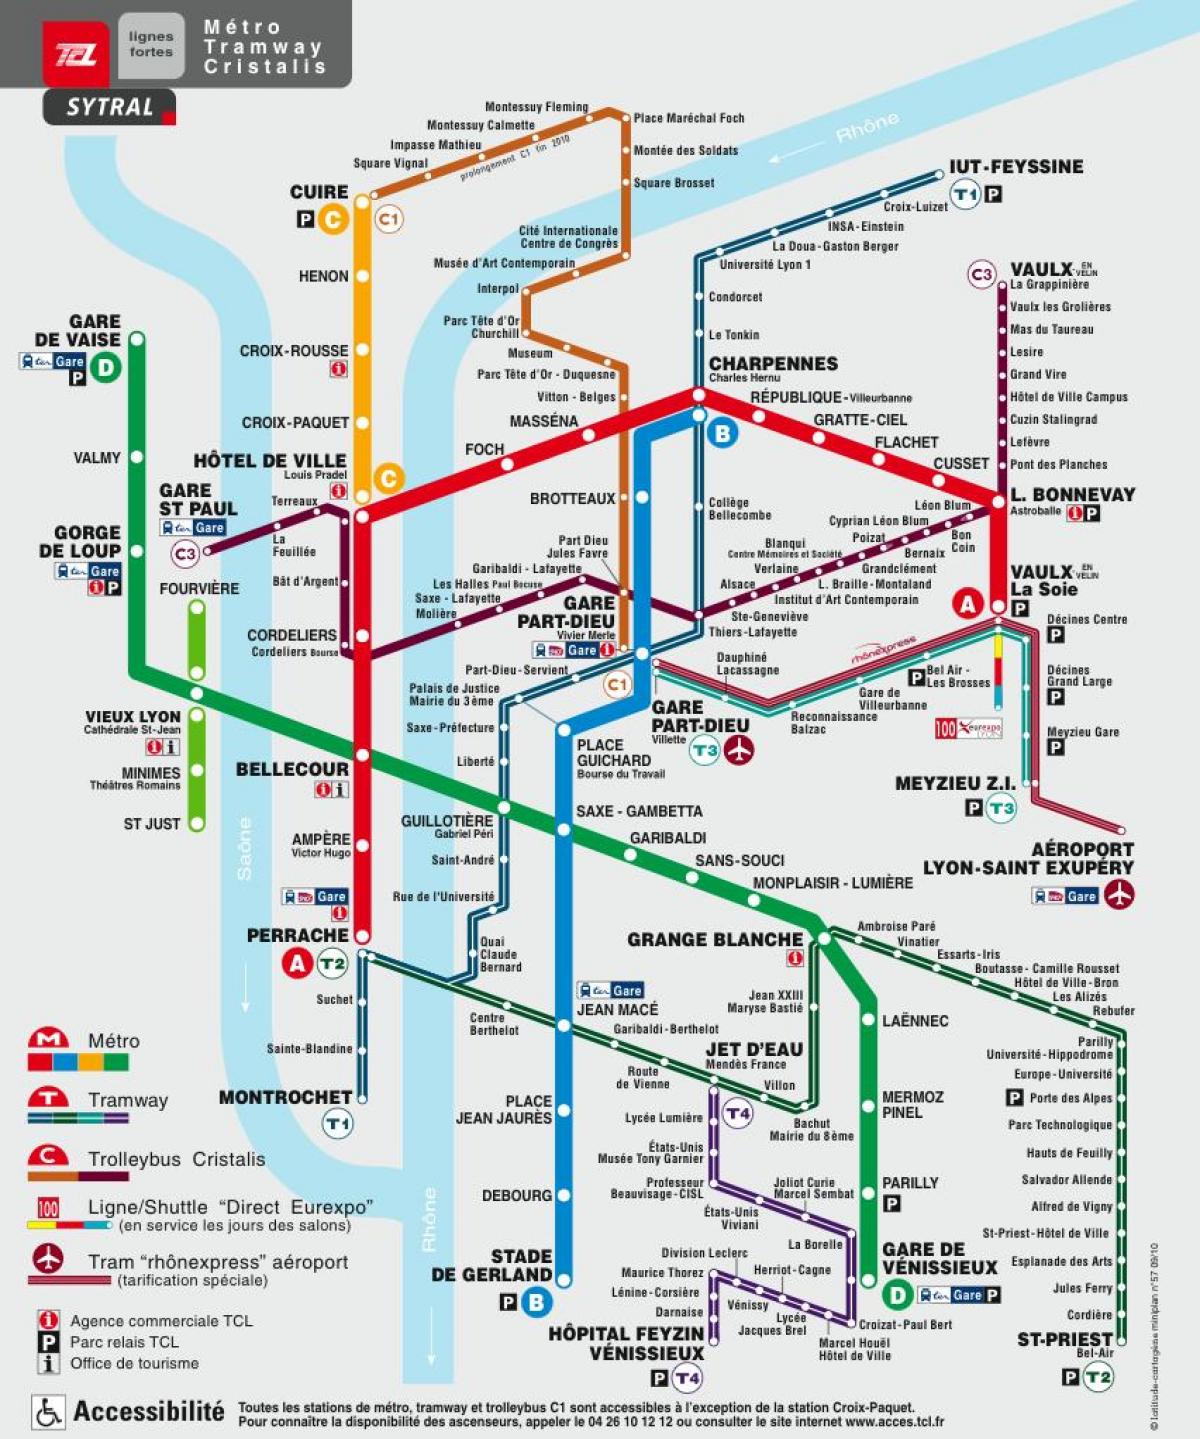 Лион је на мапи метроа